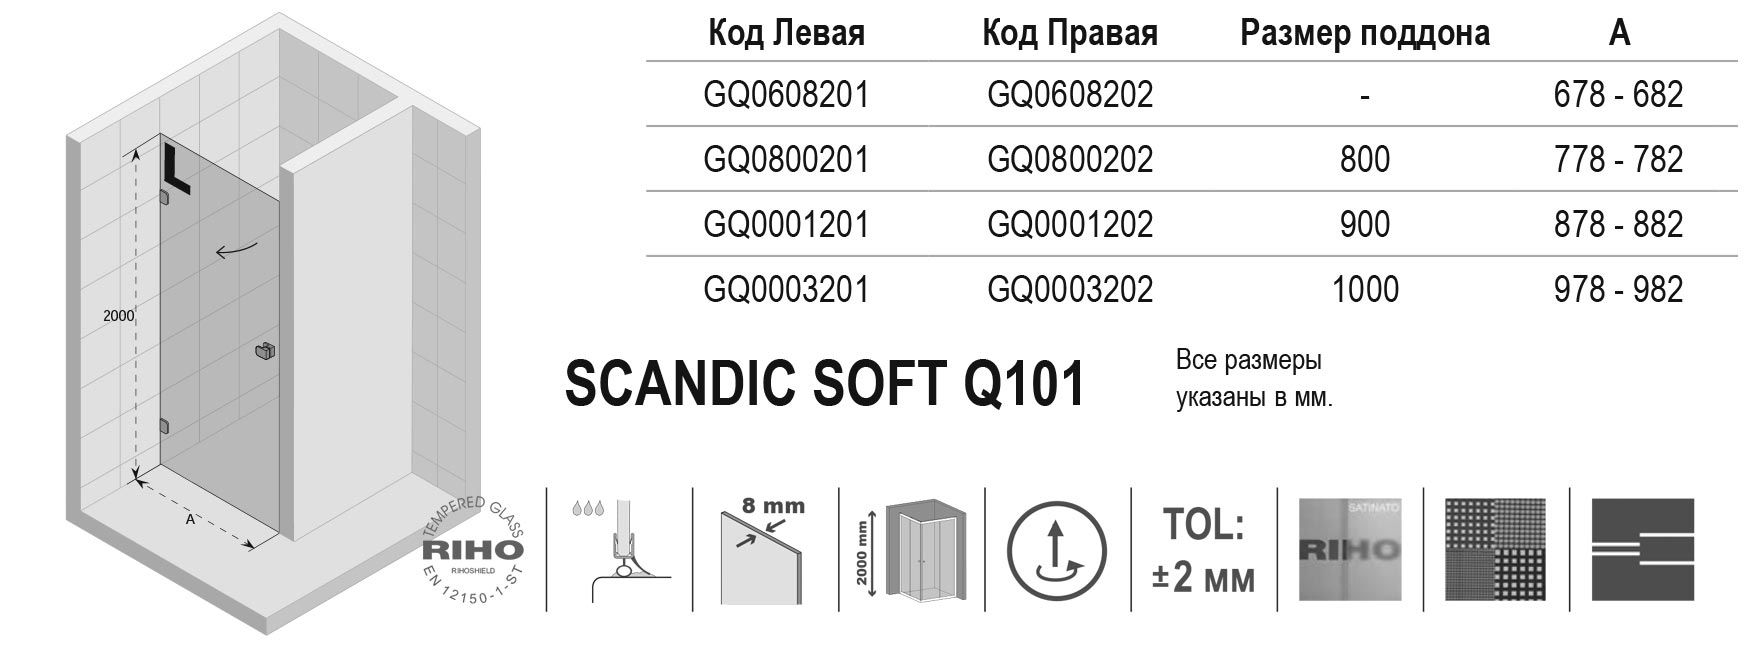 Чертёж Riho Scandic Soft Q101 GQ0608202